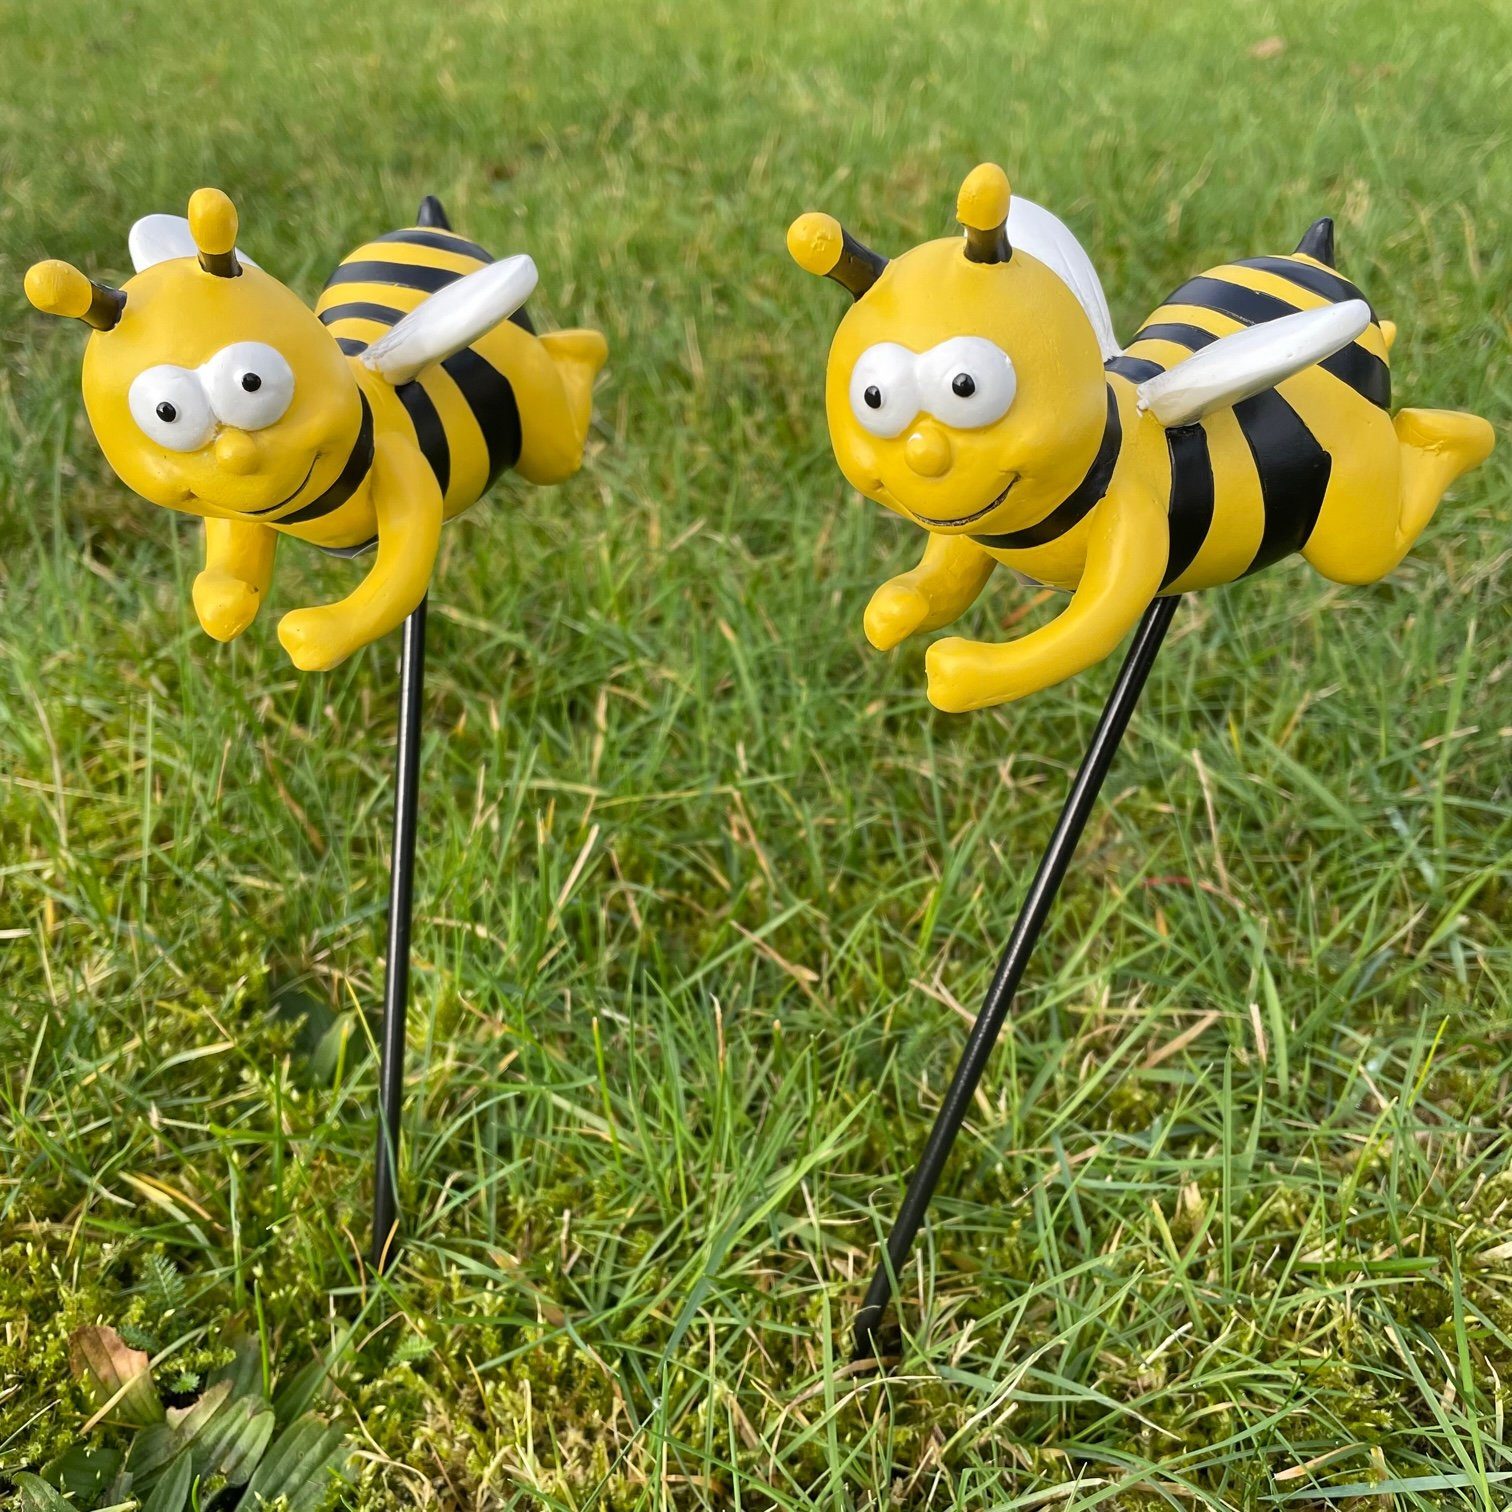 Online-Fuchs Gartenstecker 2er Set Gartenstecker süße Bienen groß Beetstecker Figuren aus Kunstharz und Metall, 41 cm hoch, witterungsbeständig